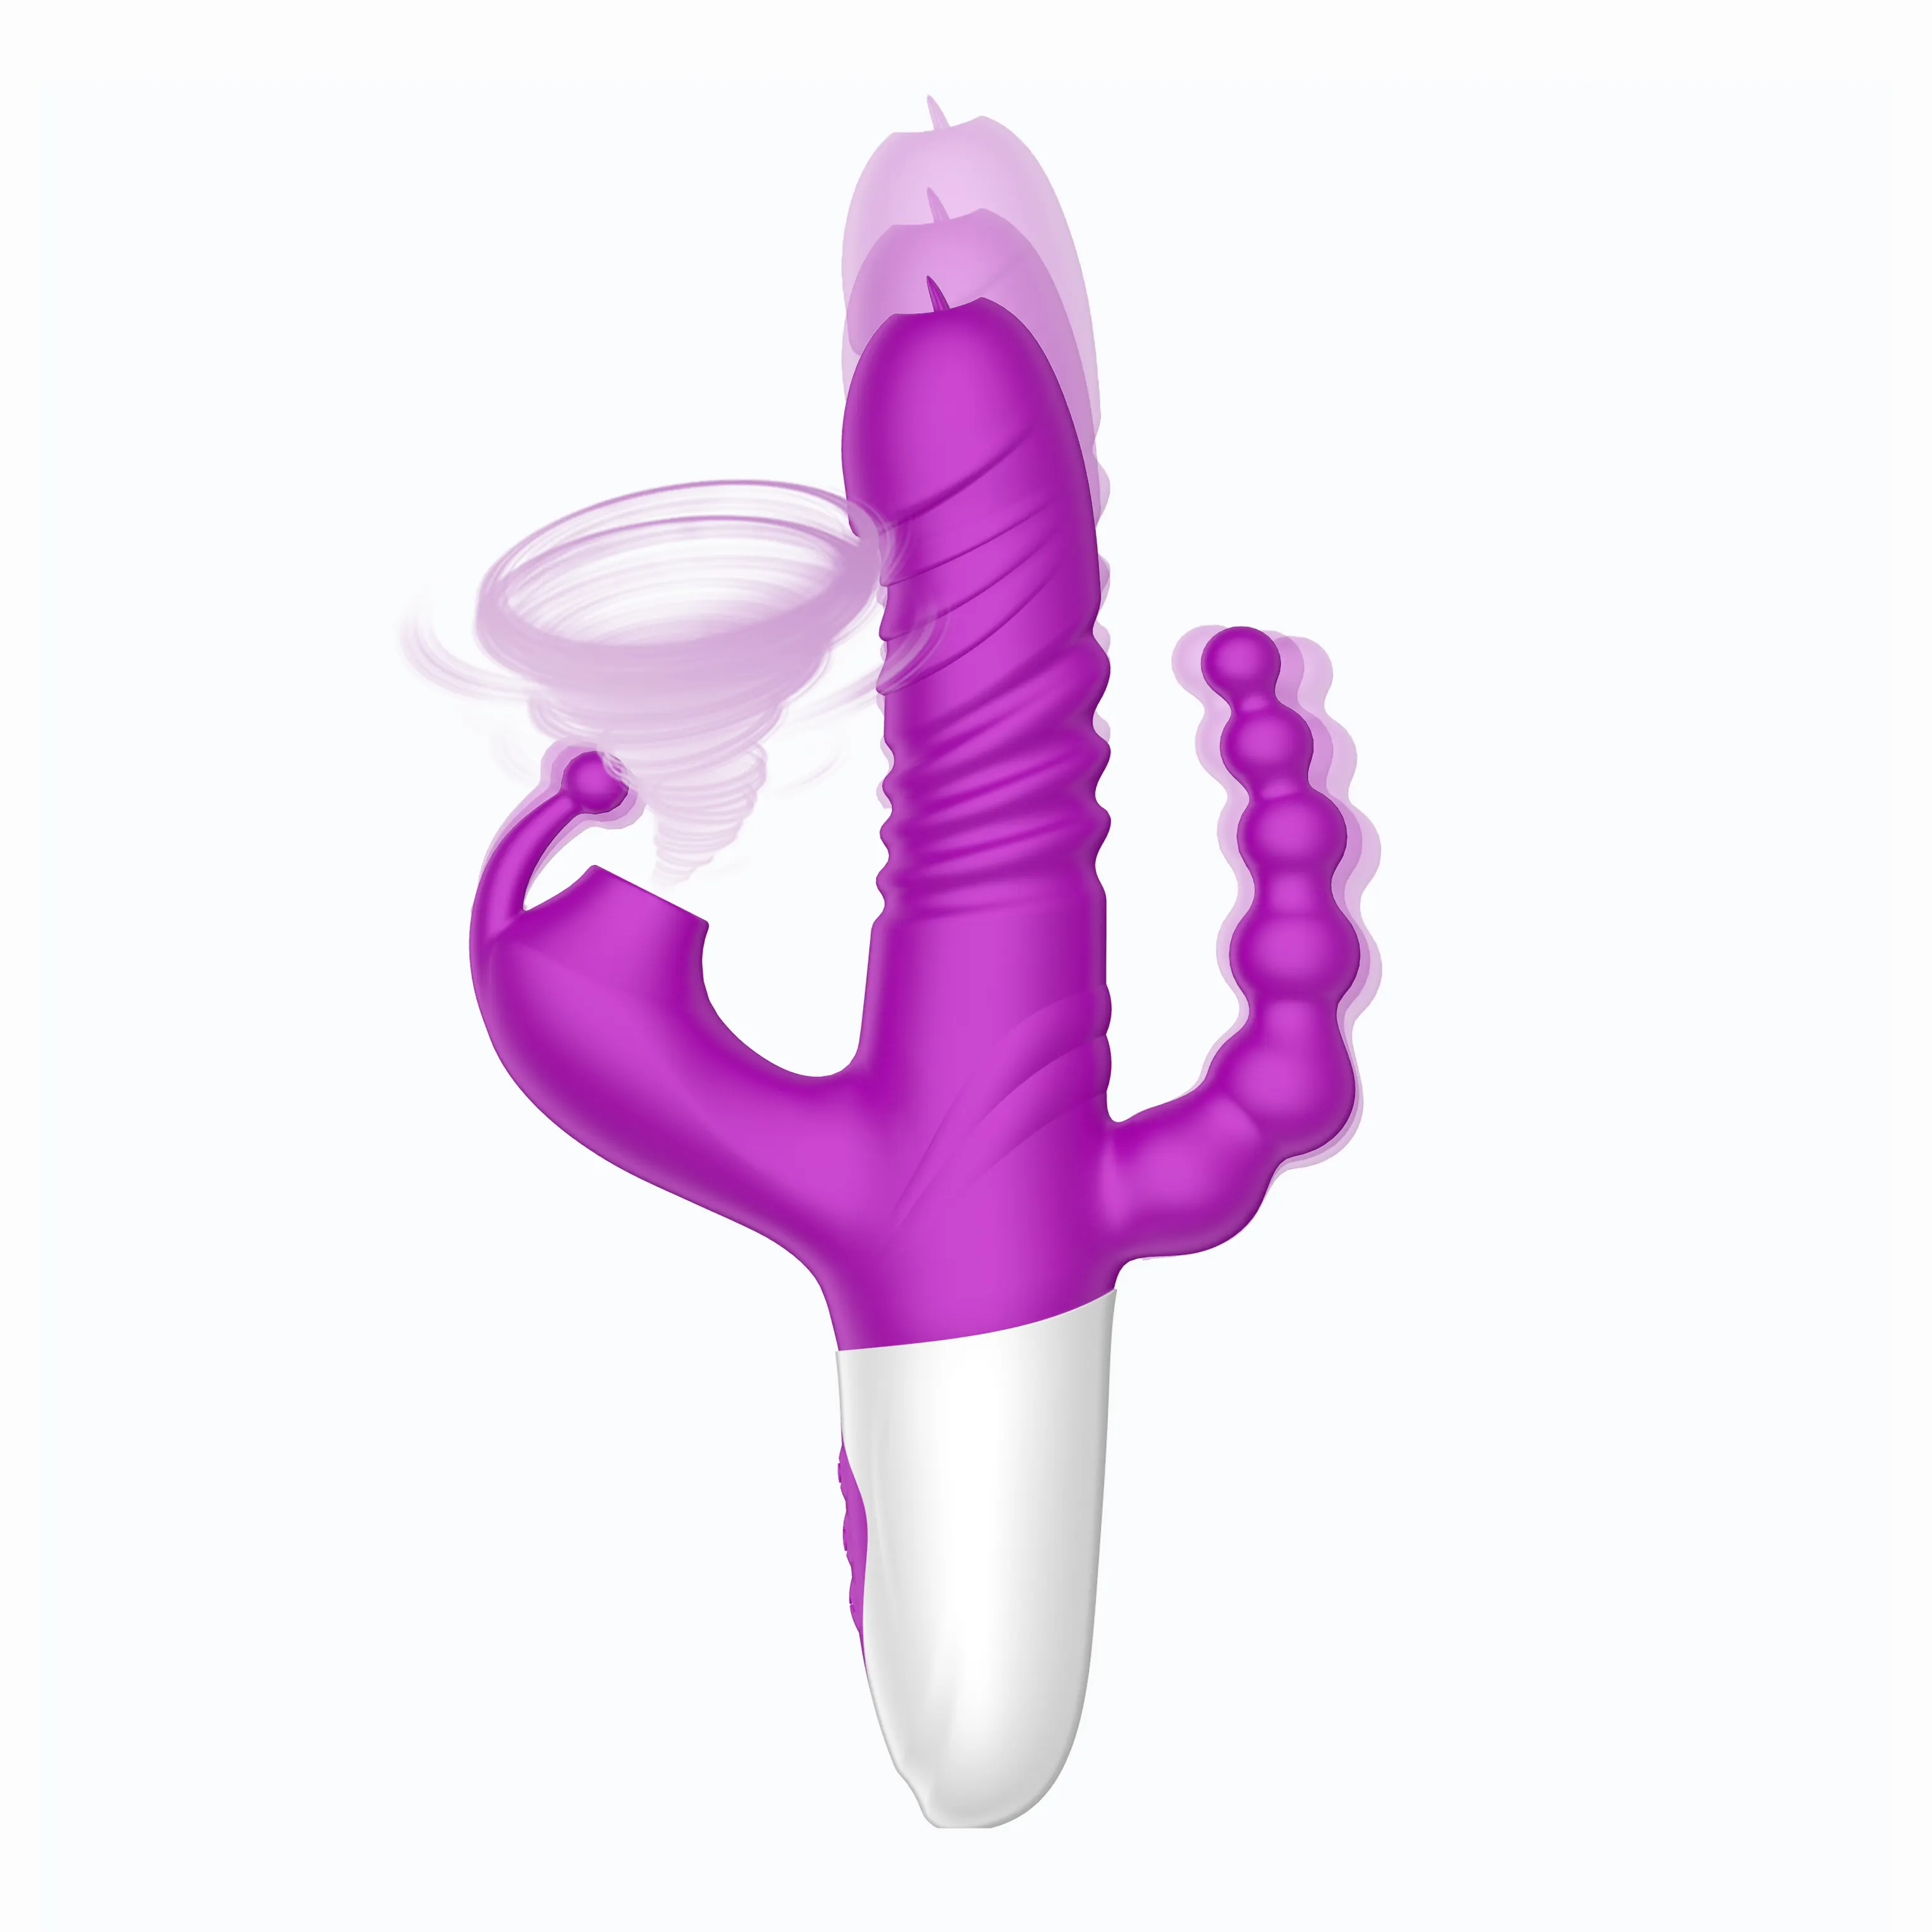 Neuer Bestseller 3 IN 1 Triple Stimulator Schub rotierende saugende Kaninchen Vibrator Zauberstab Silikon Adult Sexspielzeug für Frauen